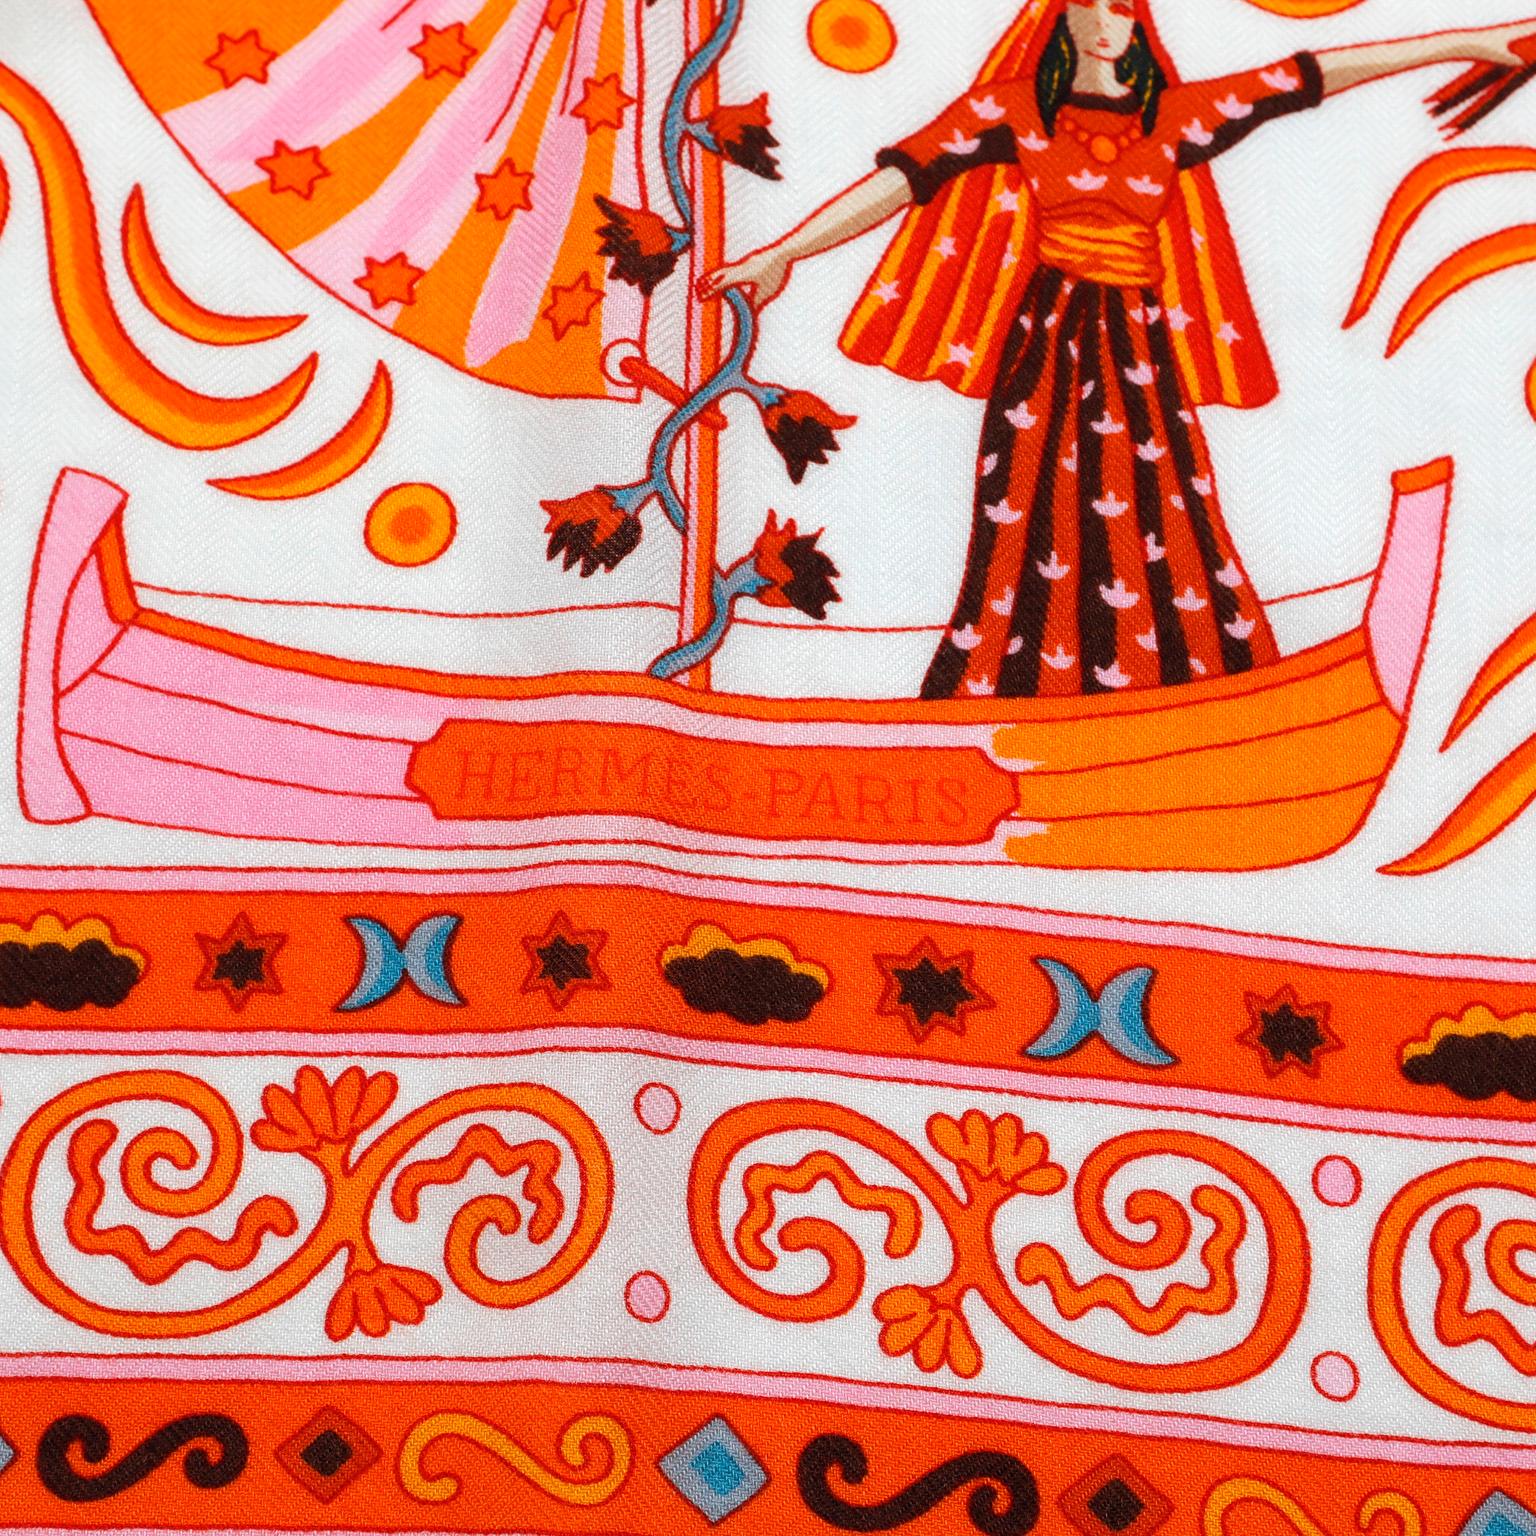 Cette authentique écharpe en cachemire Hermès Peuple du Vent orange et rose est en parfait état.  Le design met en scène des animaux et des artistes du peuple rom.  Conçu par Christine Henry.  Boîte incluse.

PBF 13392